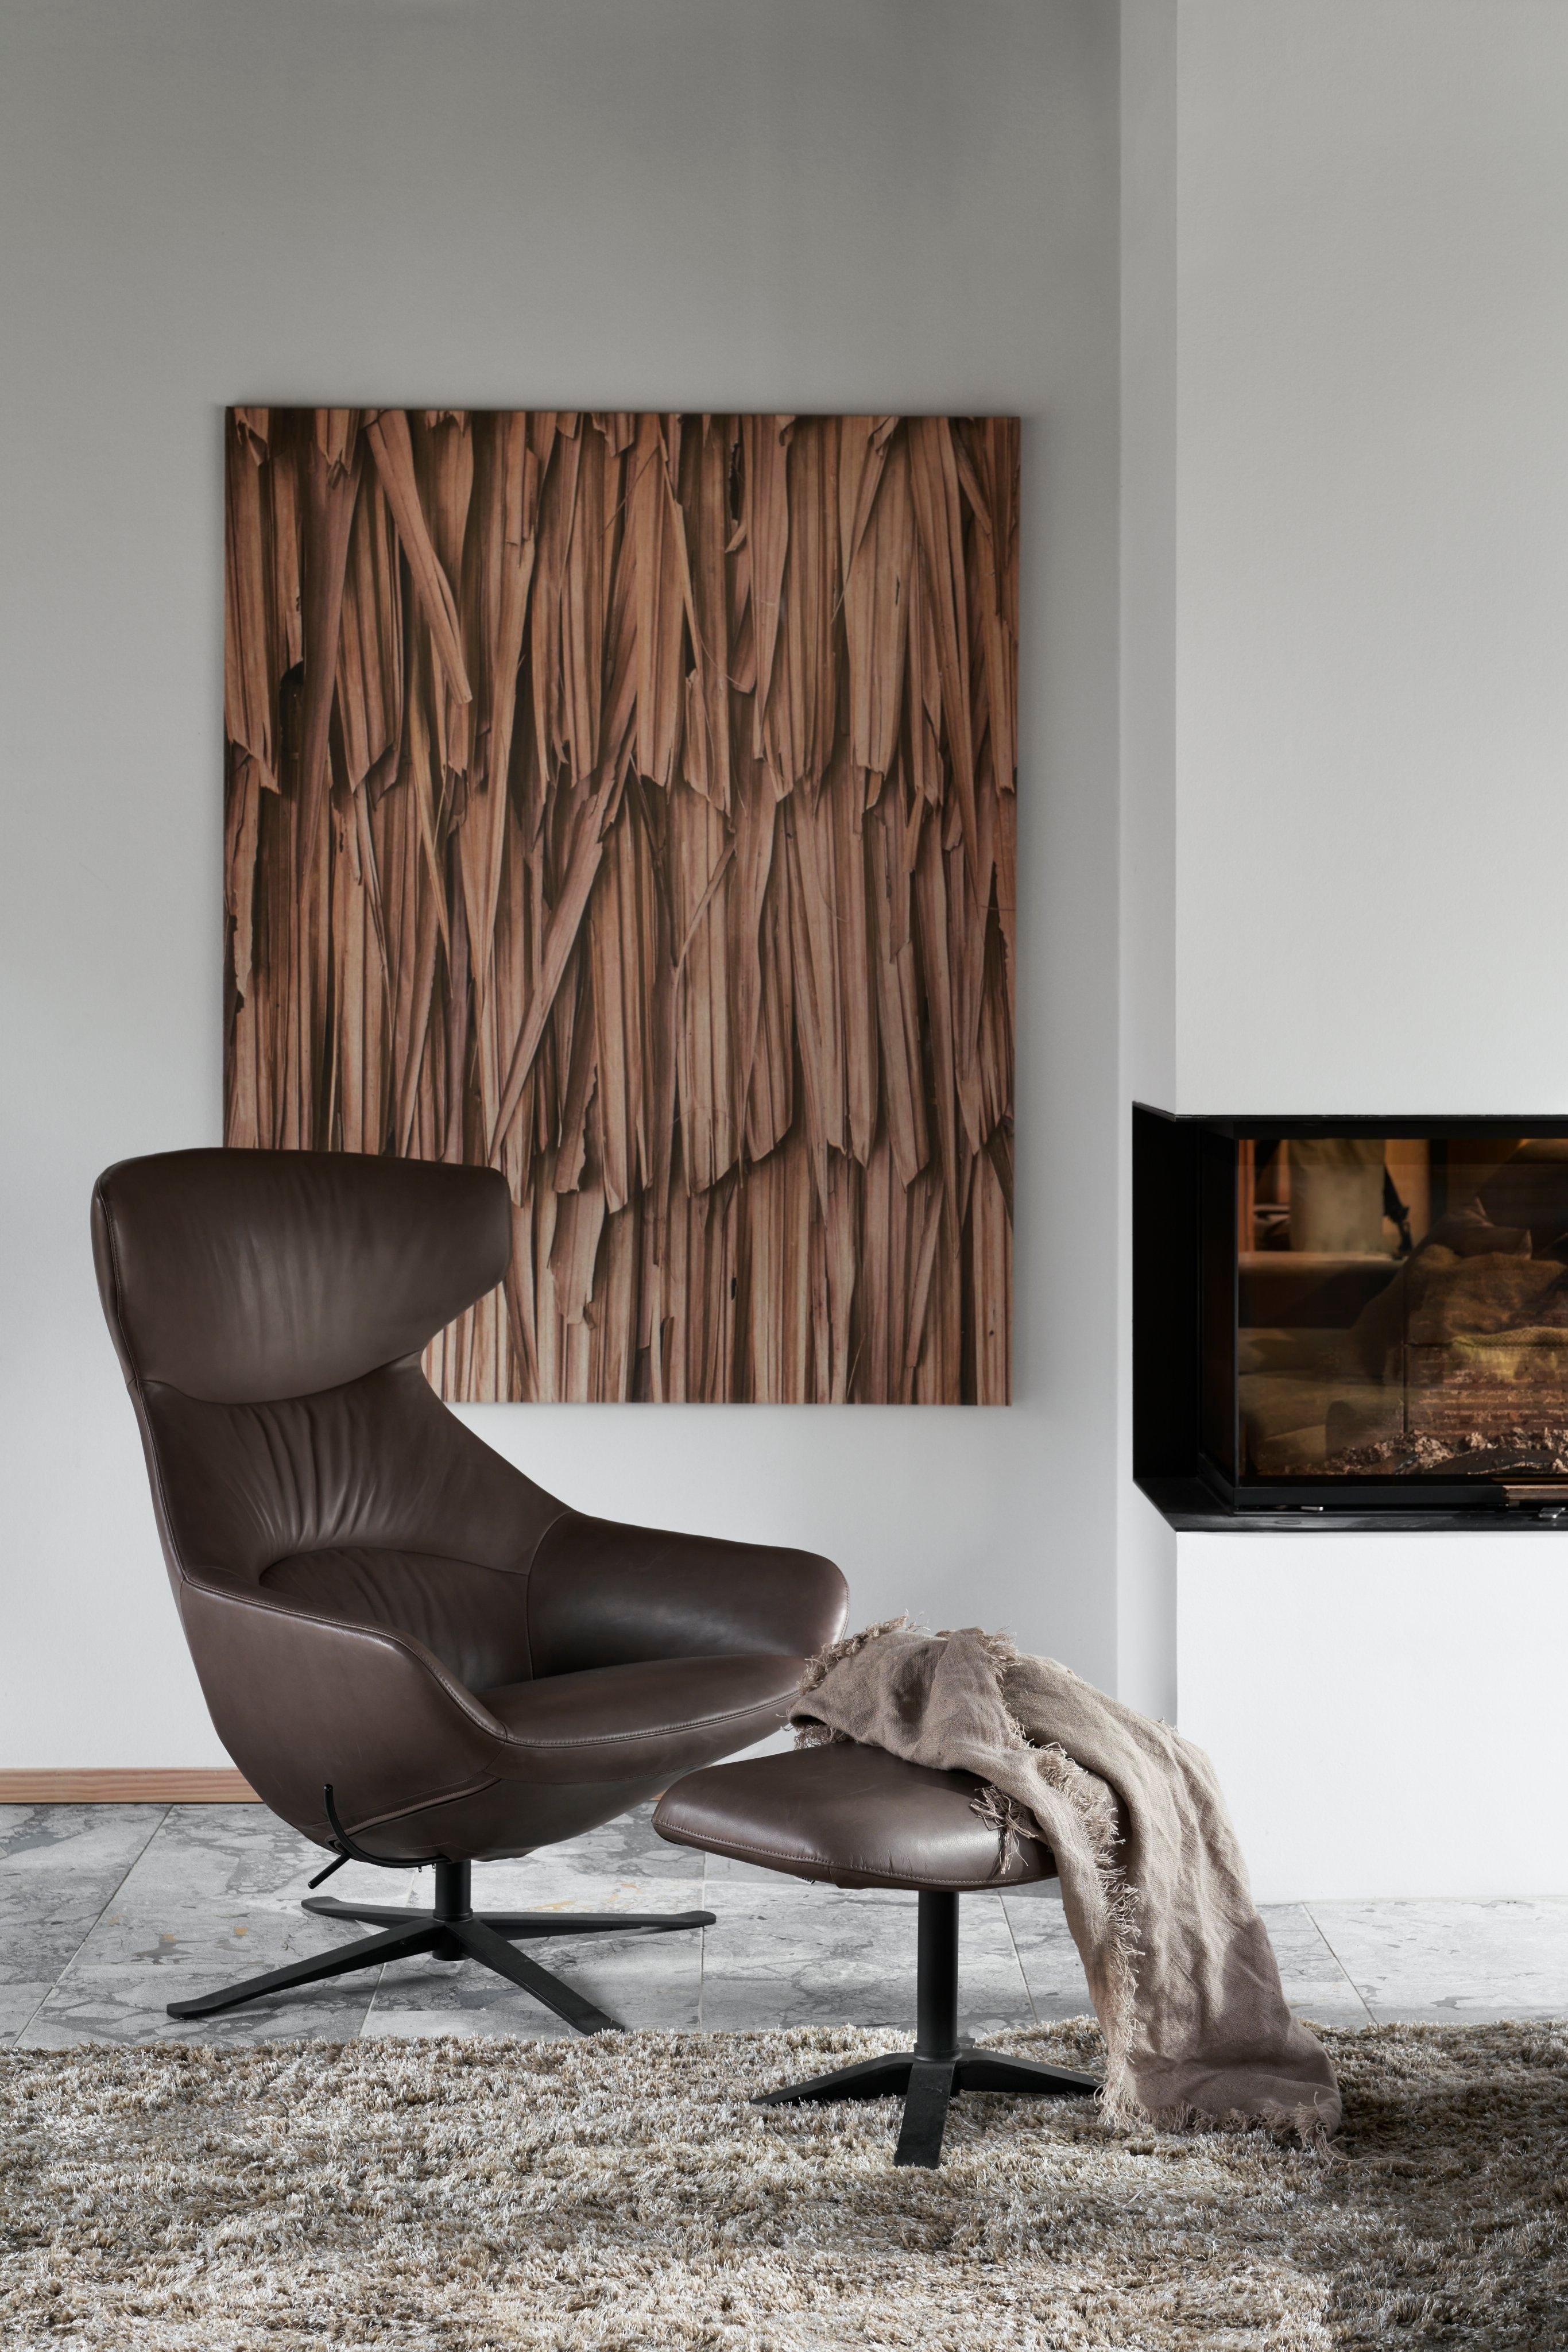 Moderna silla de piel marrón con puf, alfombra peluda, arte de madera y chimenea.